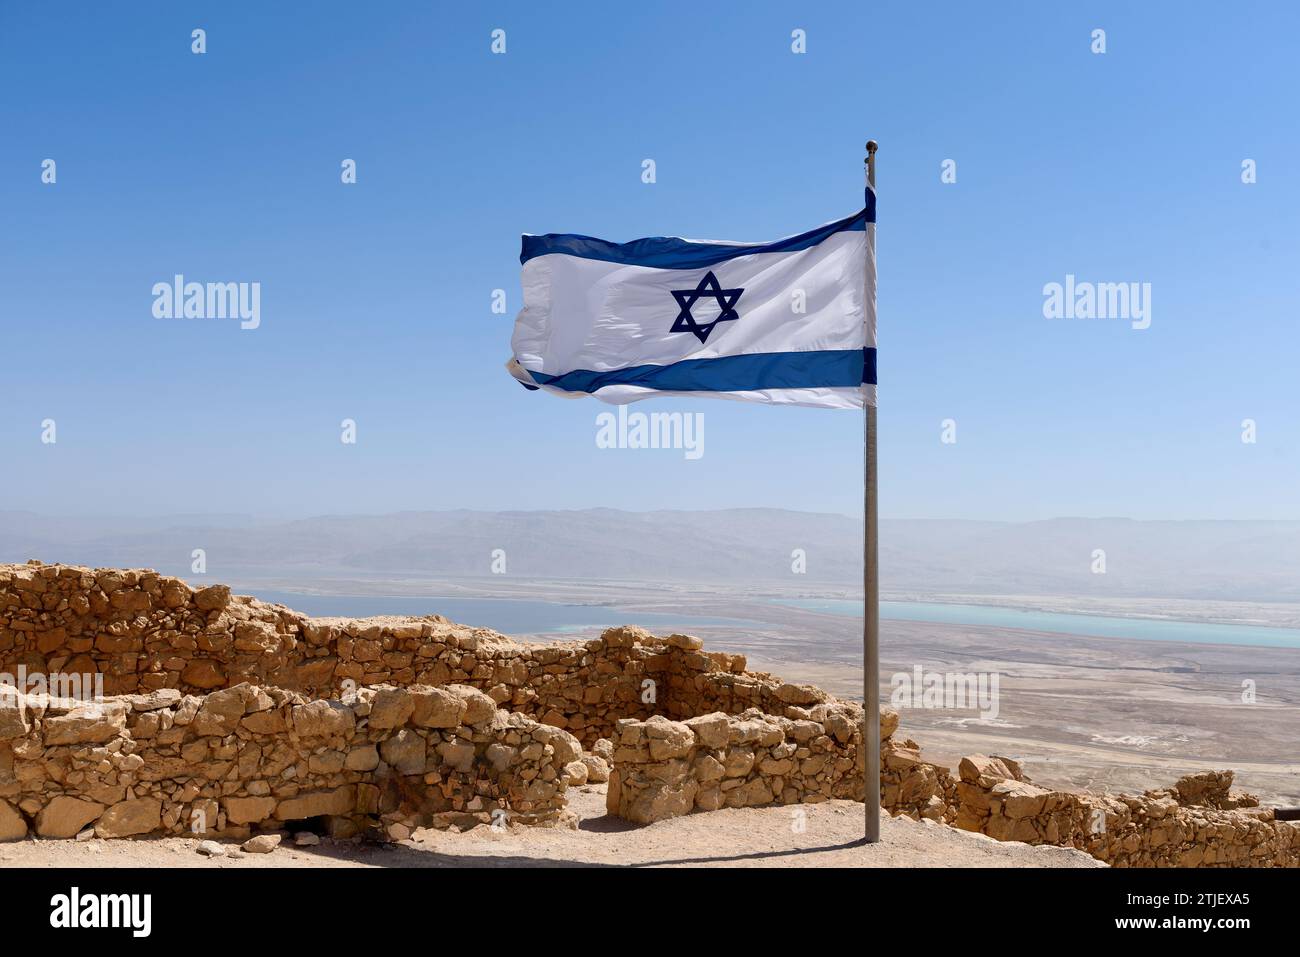 Eine israelische Flagge, die über der Festung Masada mit Blick auf das Tote Meer fliegt. Masada (Hebräisch מְצָדָה məṣādā, „Festung“; arabisch جبل مسعدة) ist eine alte Festung im südlichen Bezirk Israels, die sich auf einem abgelegenen Felsplateau befindet, ähnlich einer mesa. Es liegt am östlichen Rand der Judäischen Wüste, mit Blick auf das Tote Meer 20 km östlich von Arad. Herodes der große baute zwei Paläste auf dem Berg und befestigte Masada zwischen 37 und 31 v. Chr.. Kredit: Digitaleye/JdeSousa Stockfoto